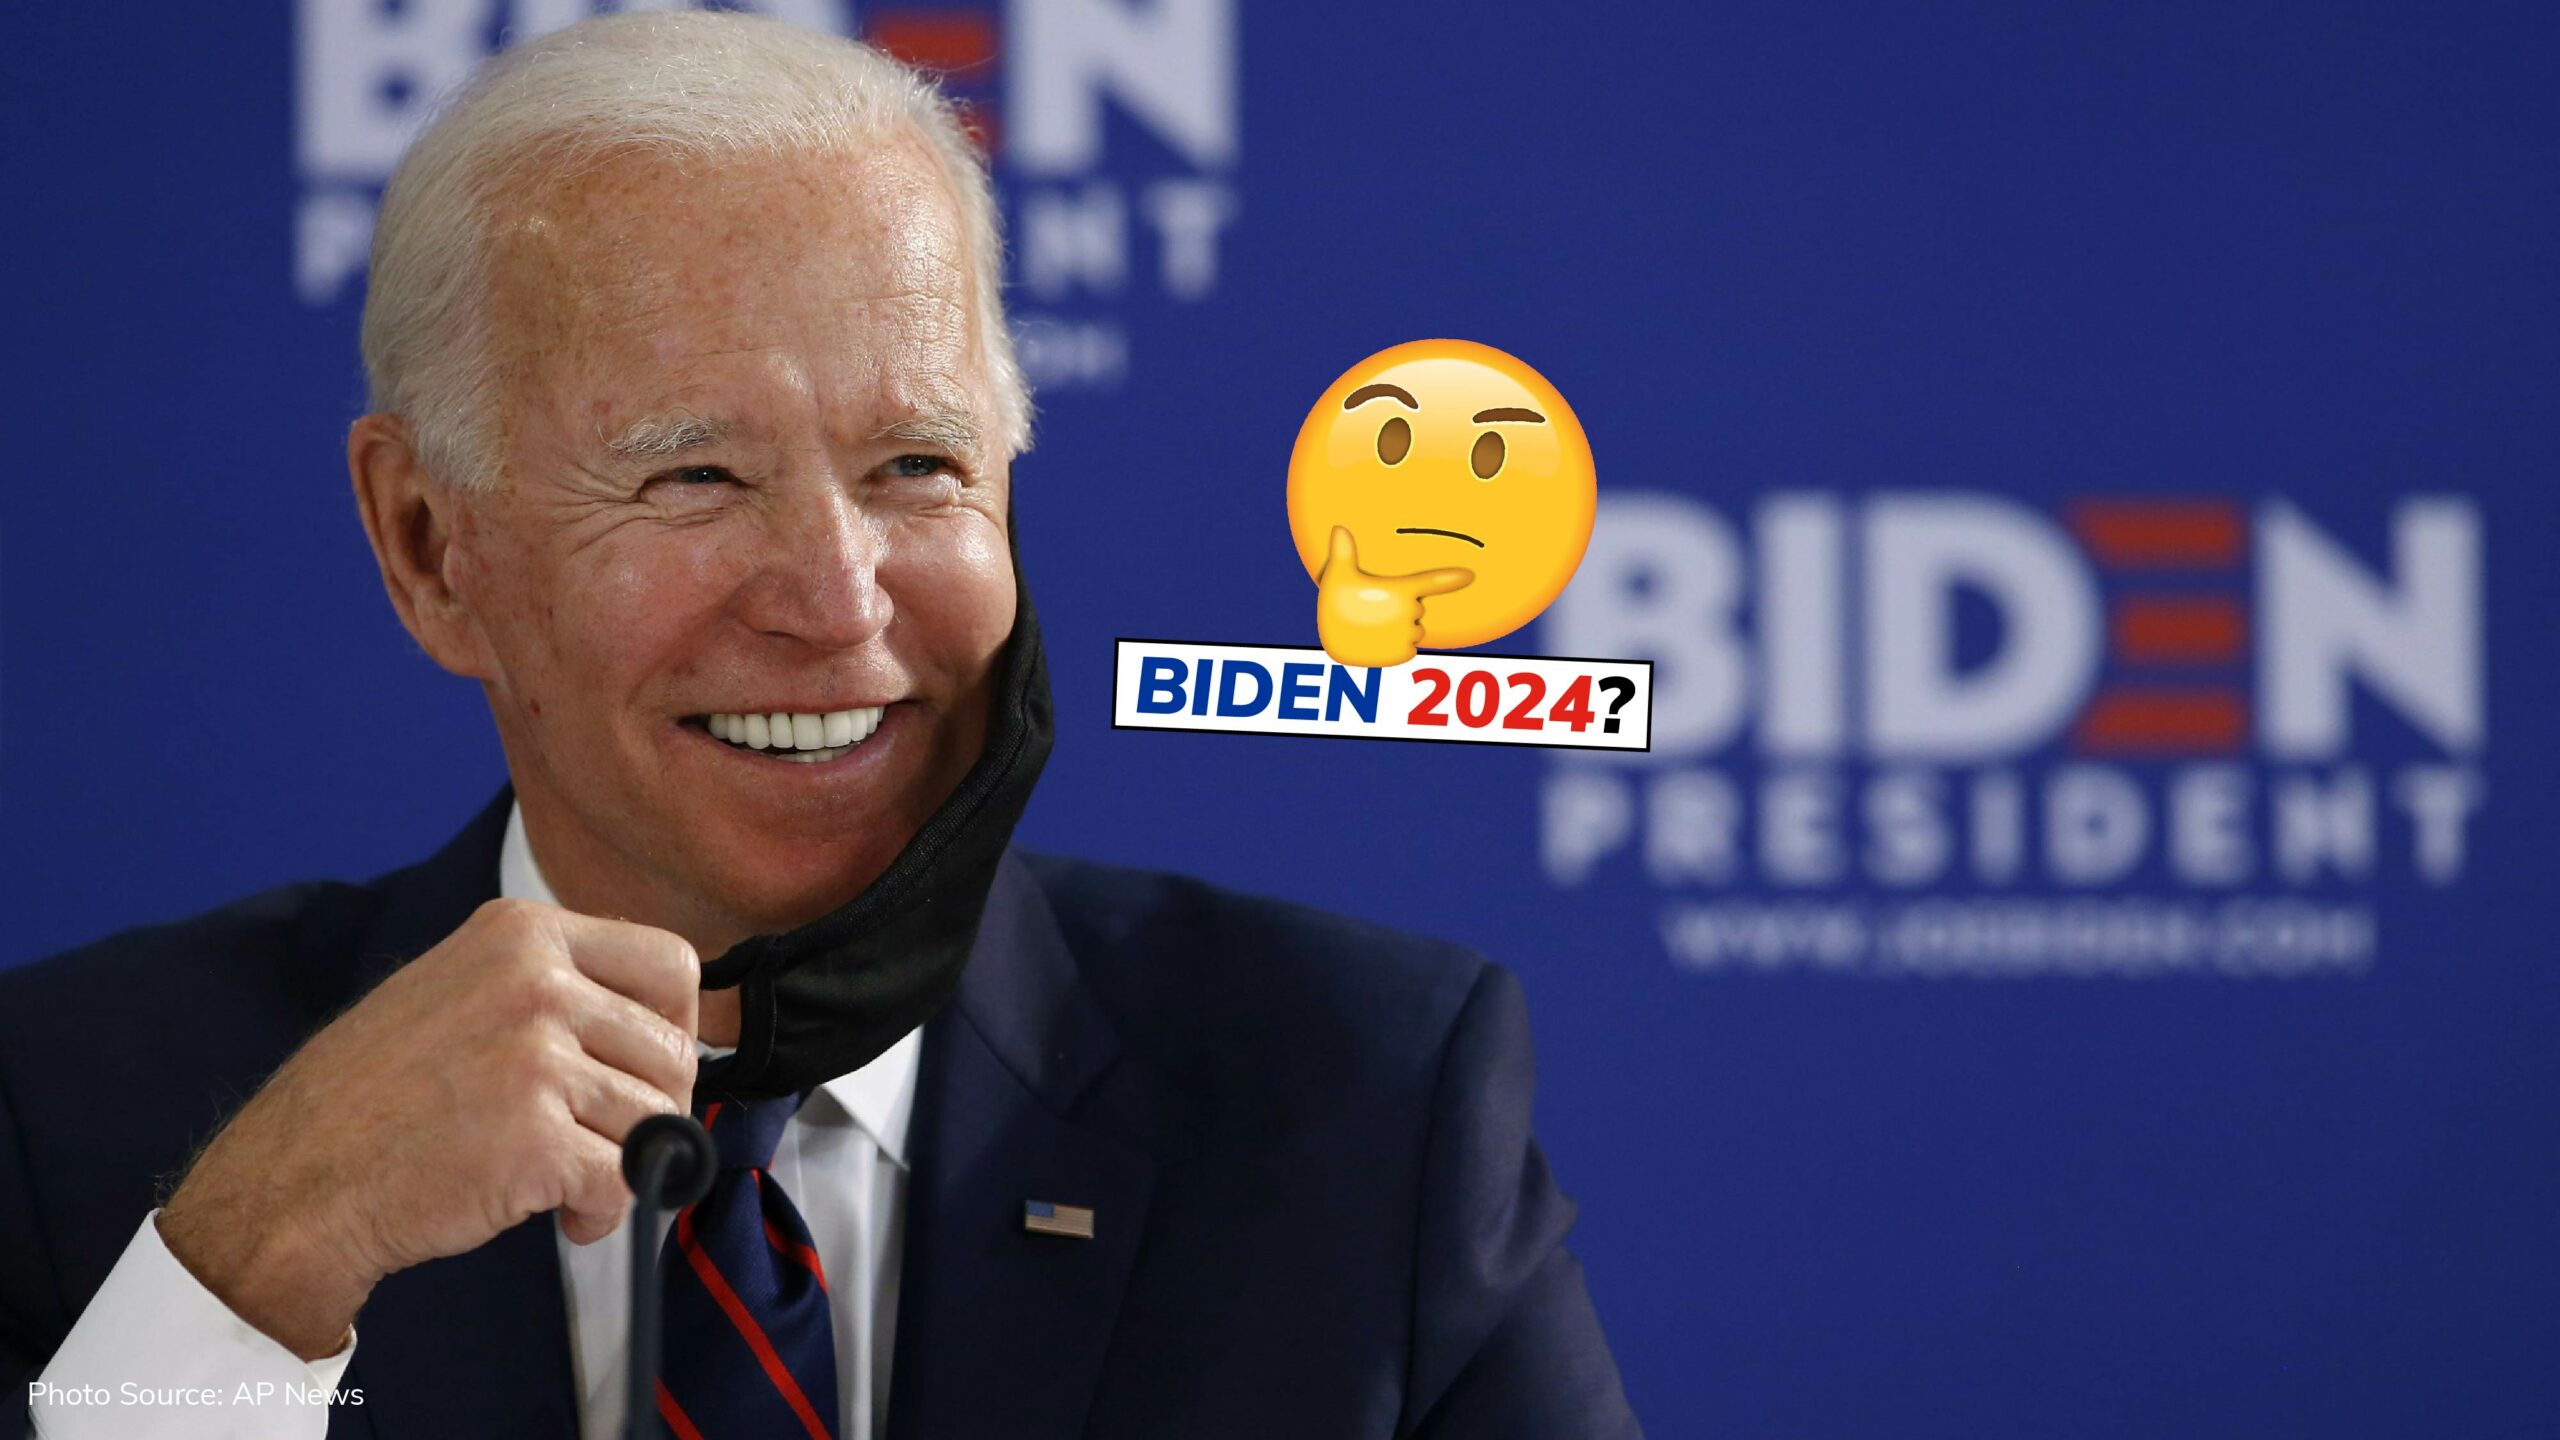 Joe Biden announces plans to run for election in 2024